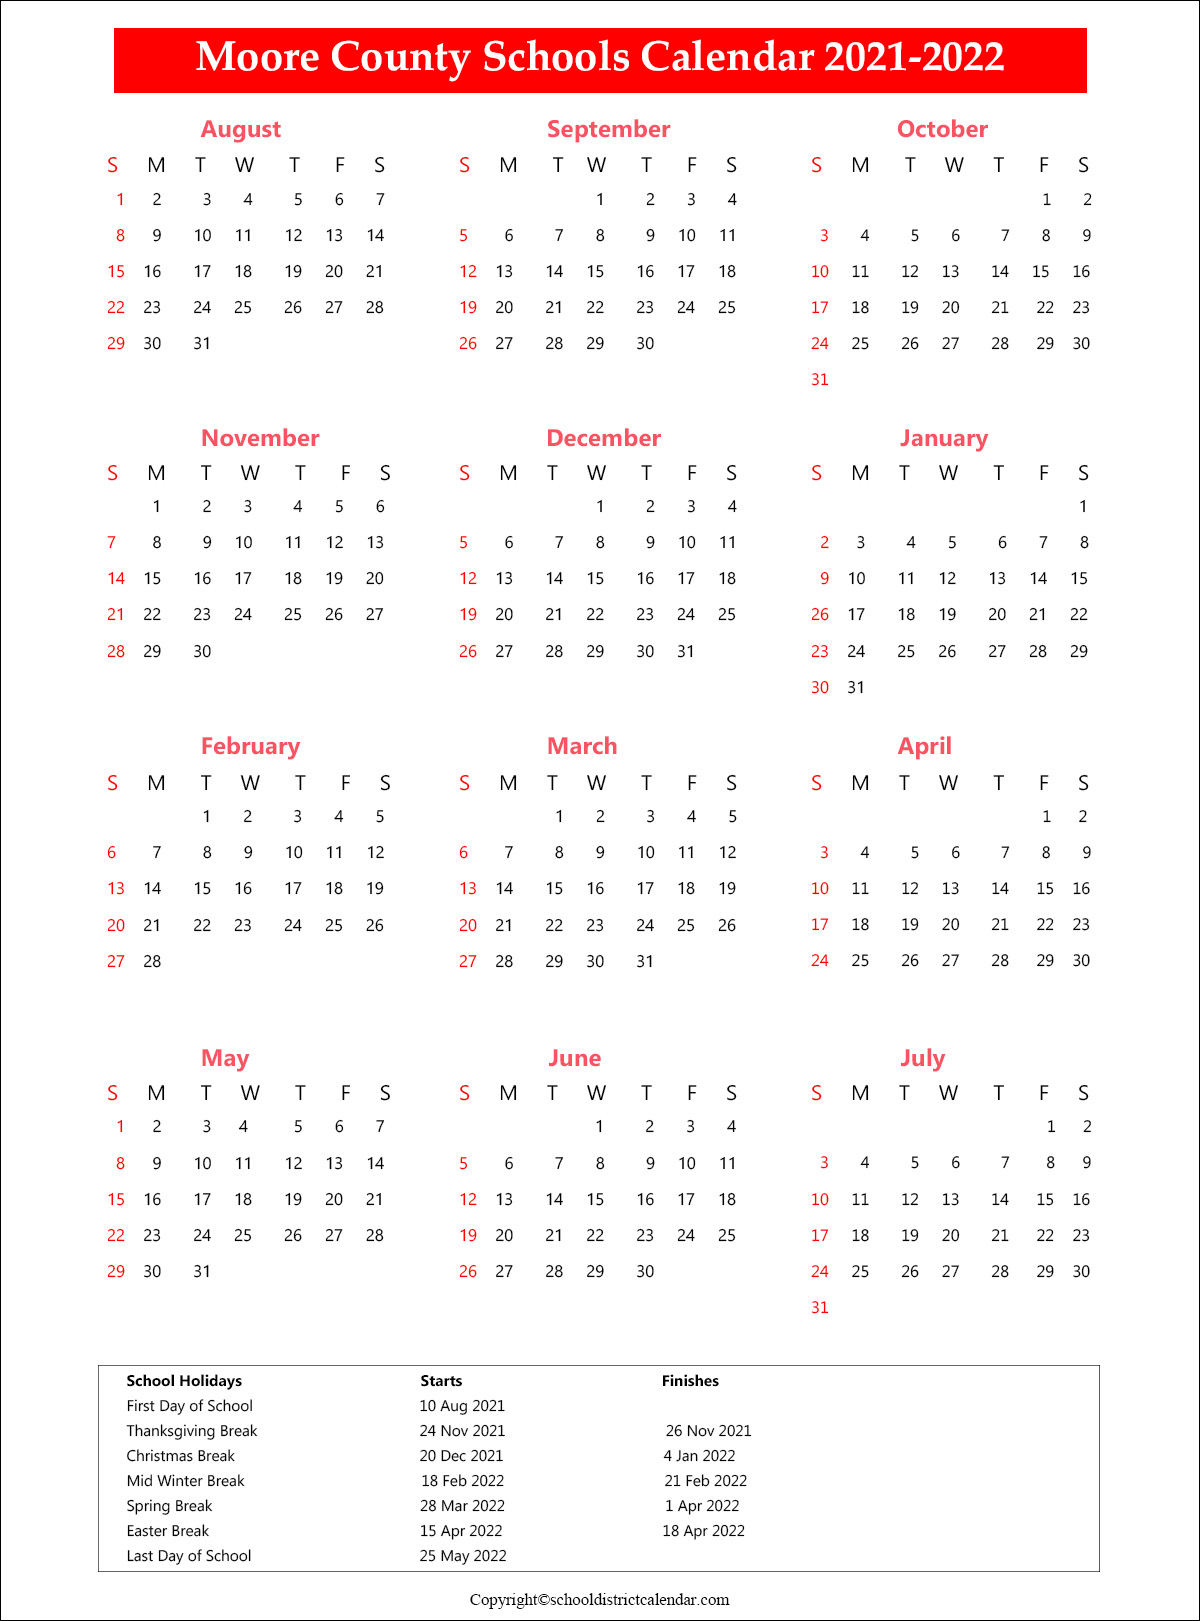 Moore County Schools Calendar 2021